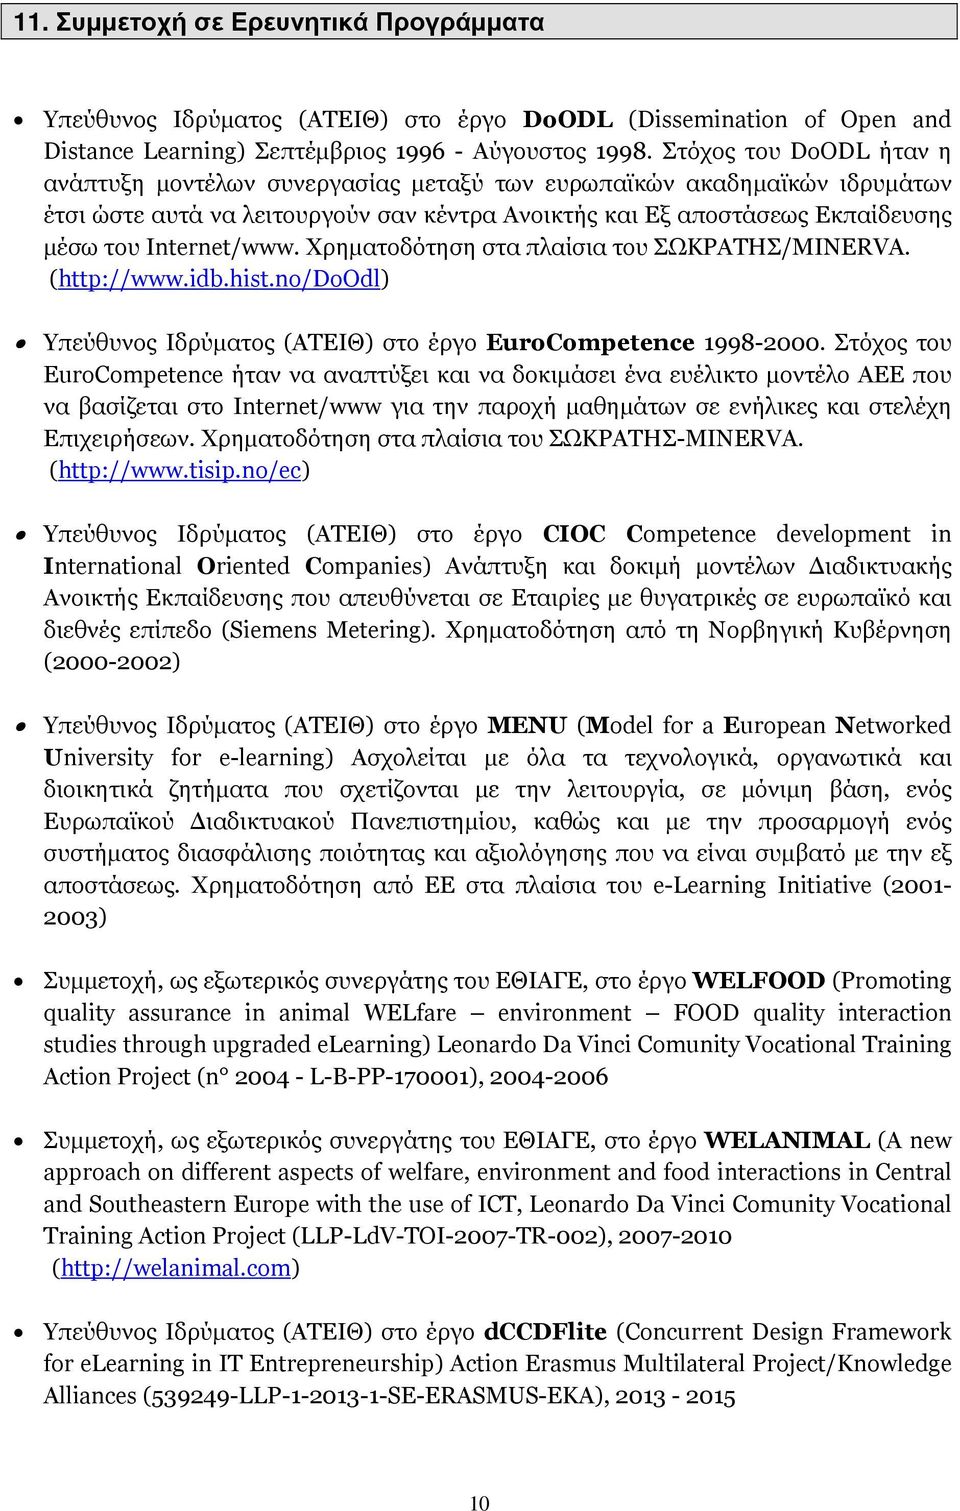 Χρηµατοδότηση στα πλαίσια του ΣΩΚΡΑΤΗΣ/MINERVA. (http://www.idb.hist.no/doodl) Υπεύθυνος Ιδρύµατος (ΑΤΕΙΘ) στο έργο EuroCompetence 1998-2000.